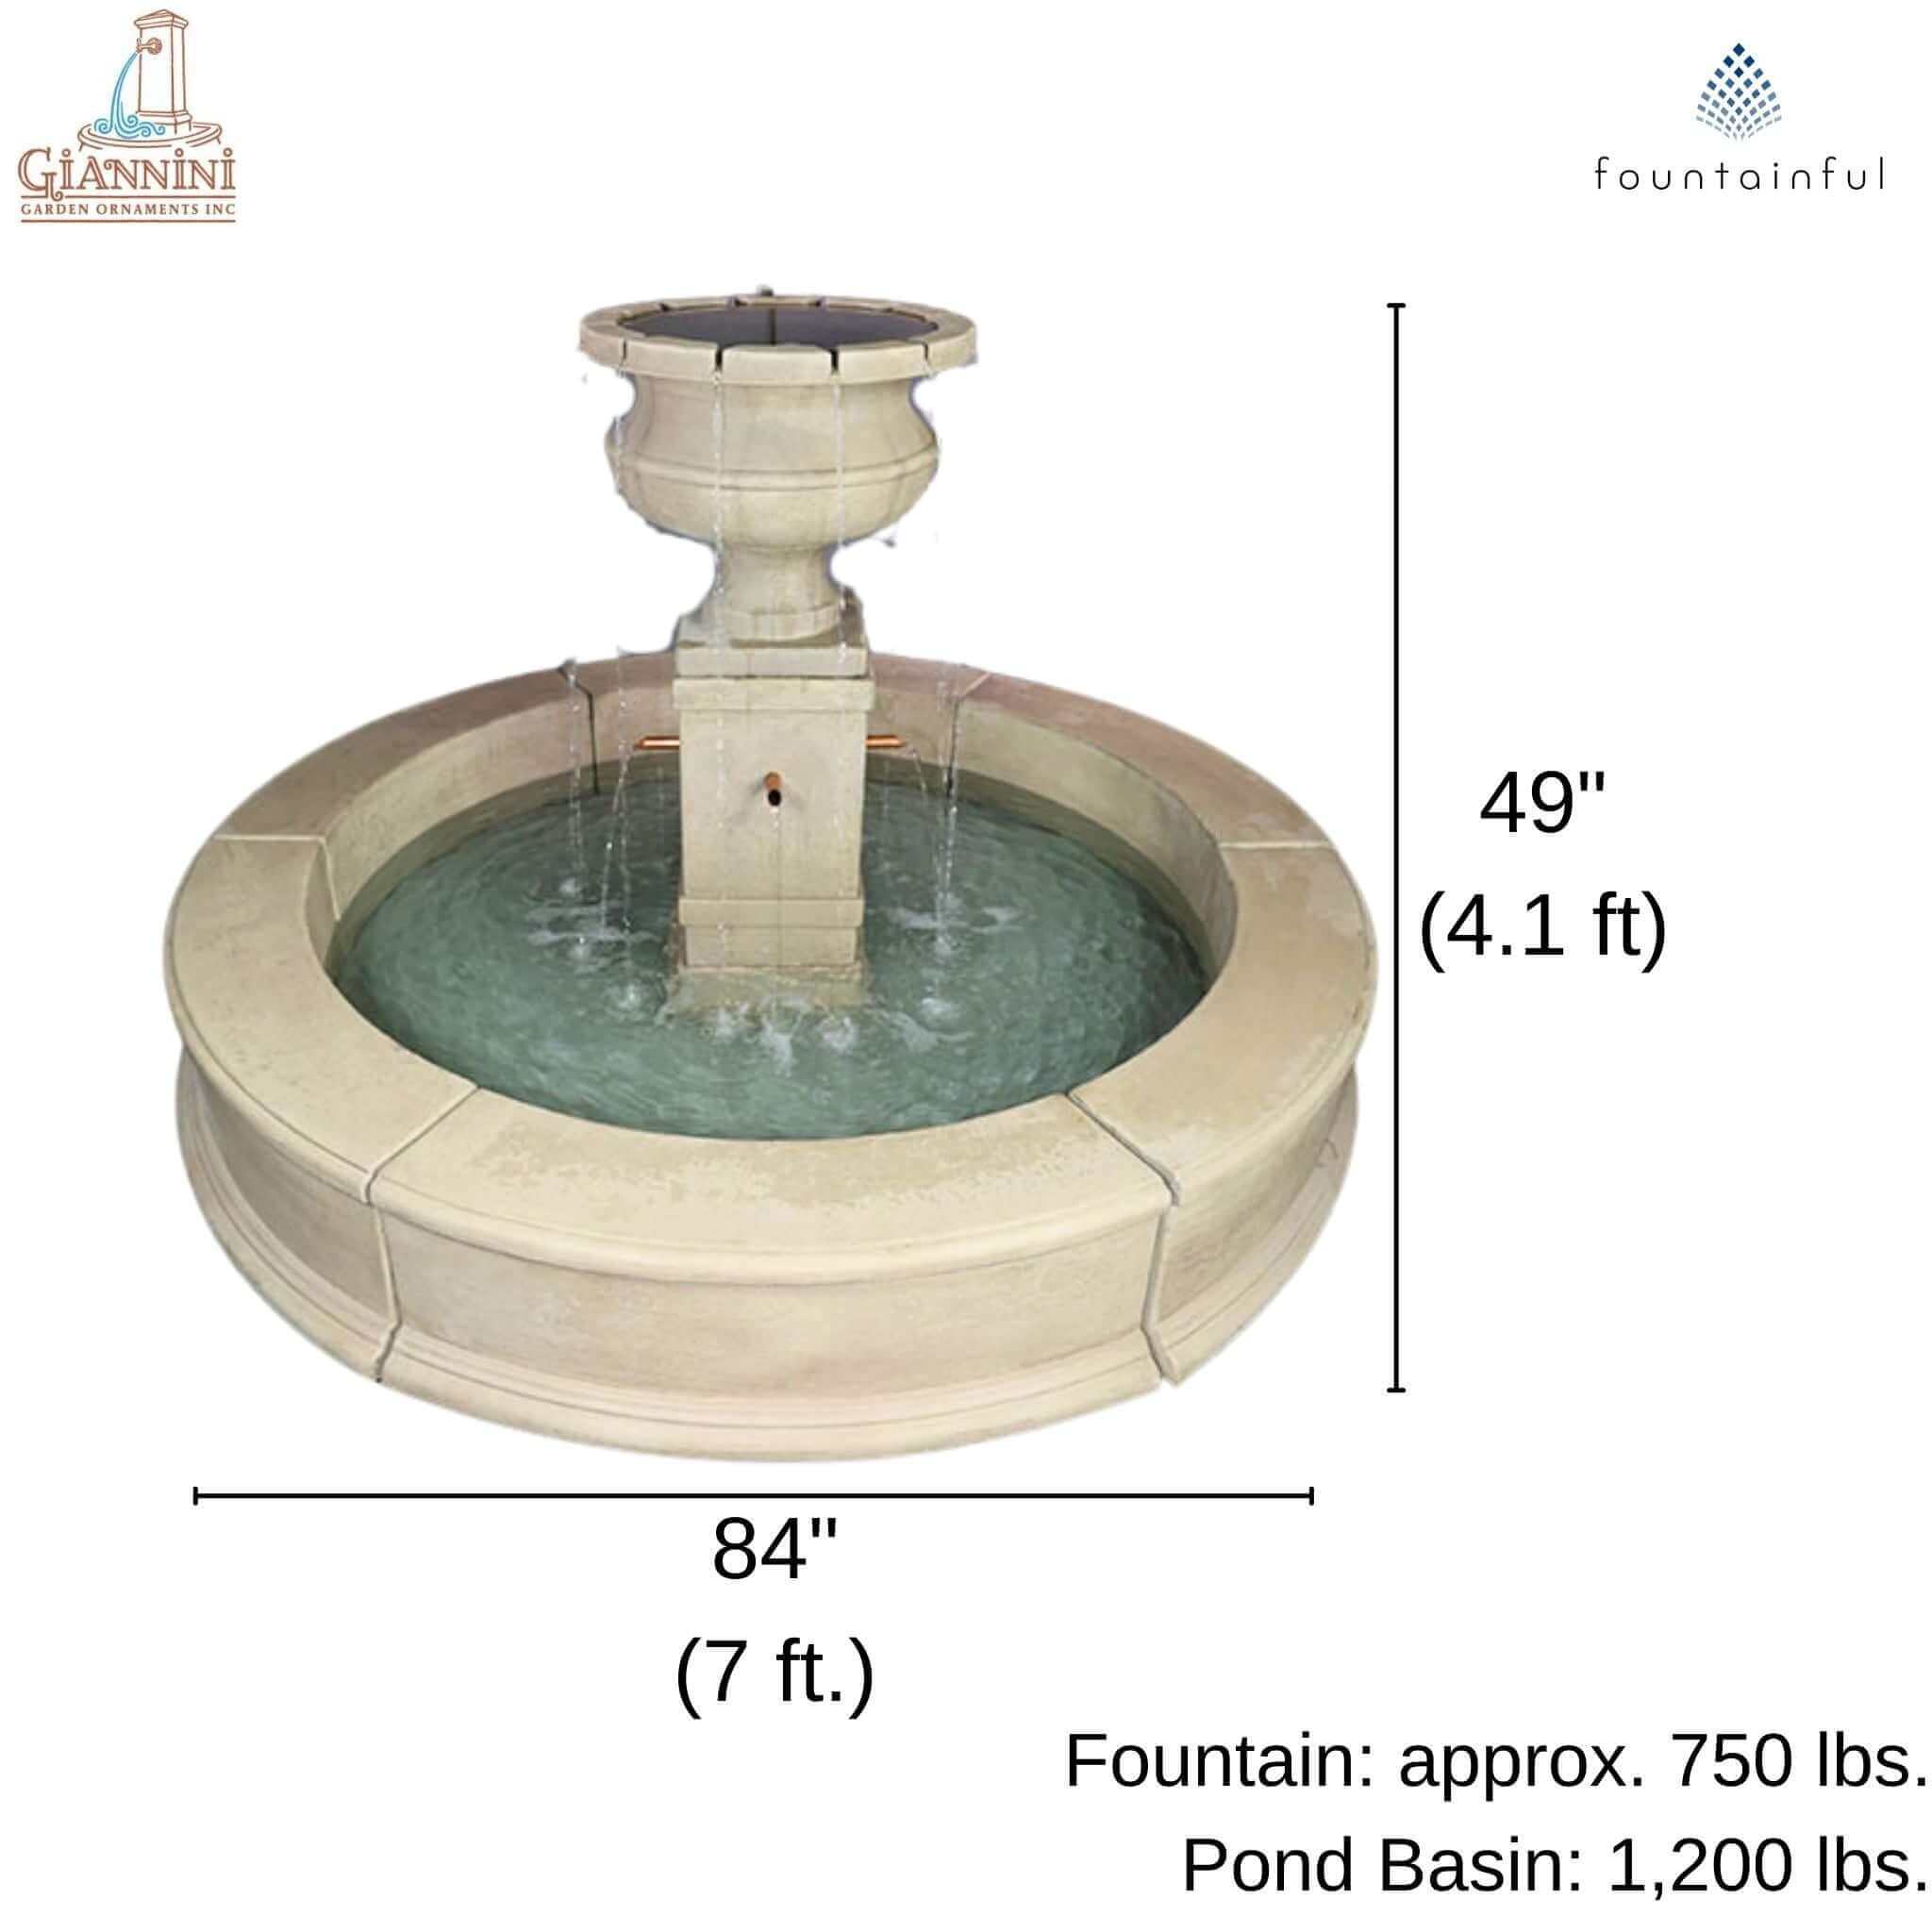 Piazza Aventino Concrete Pond Fountain - Giannini #1791